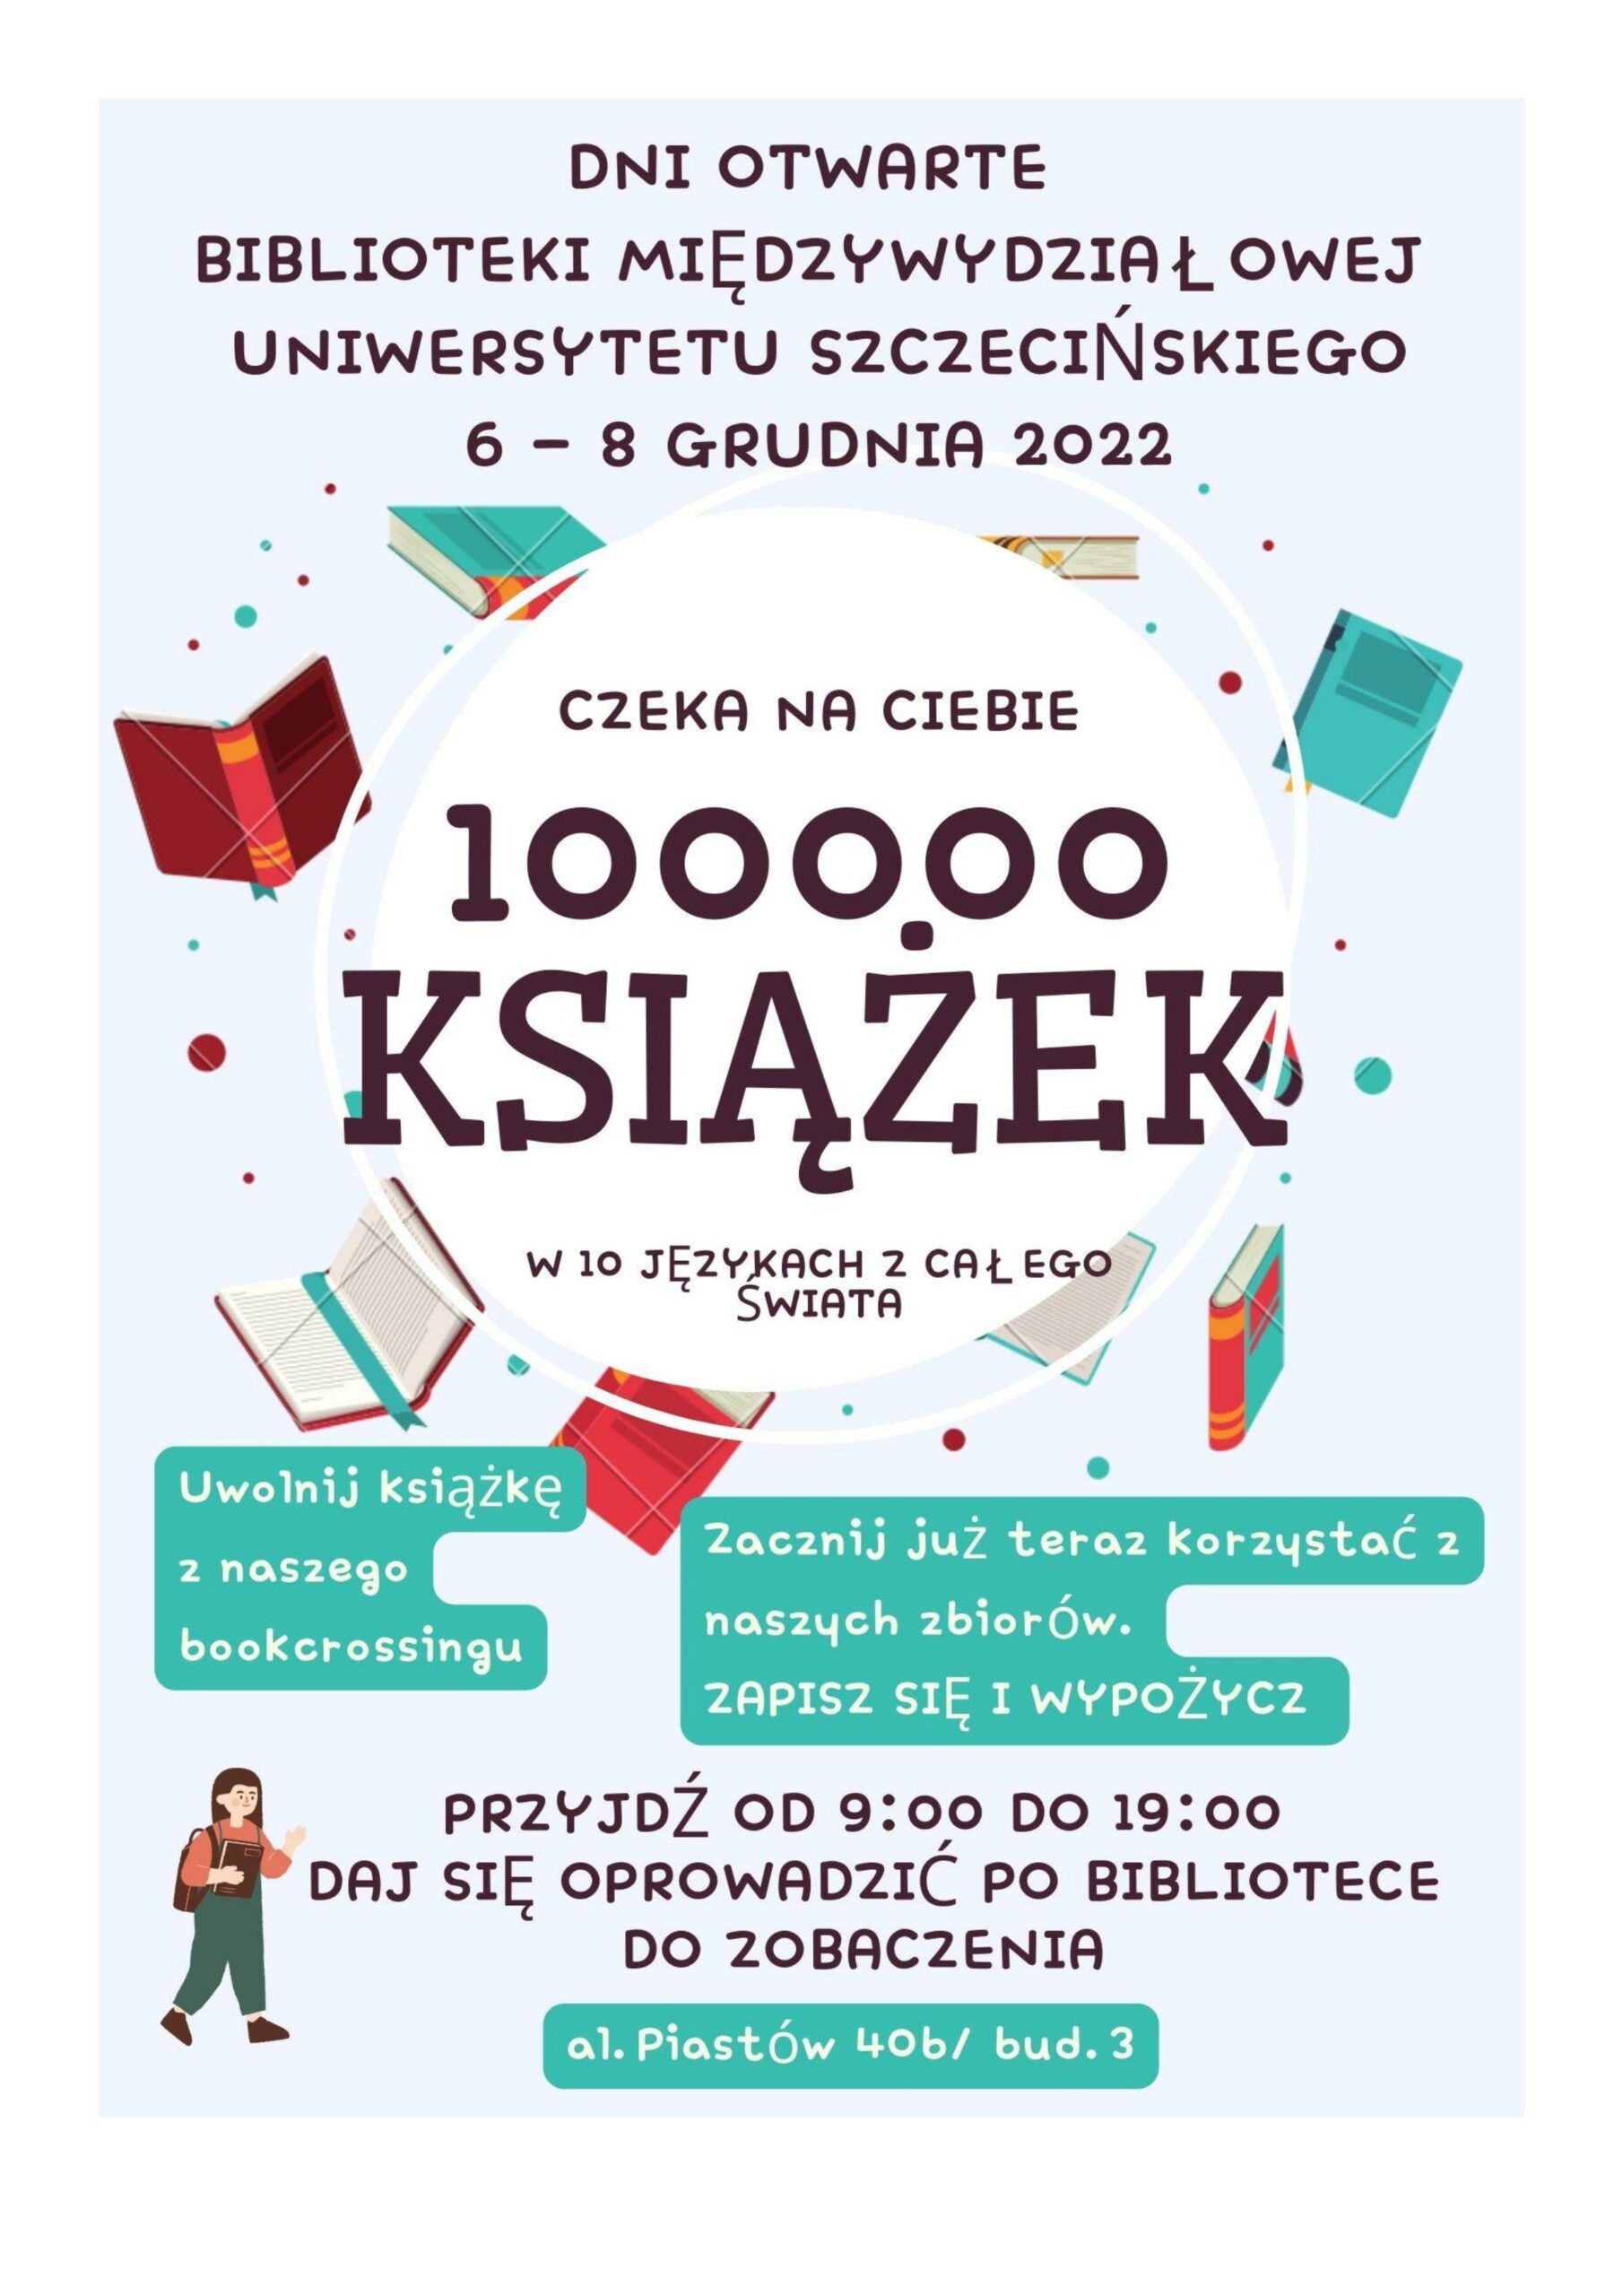 Dni Otwarte Biblioteki Międzywydziałowej 6-8 grudnia 2022 r.